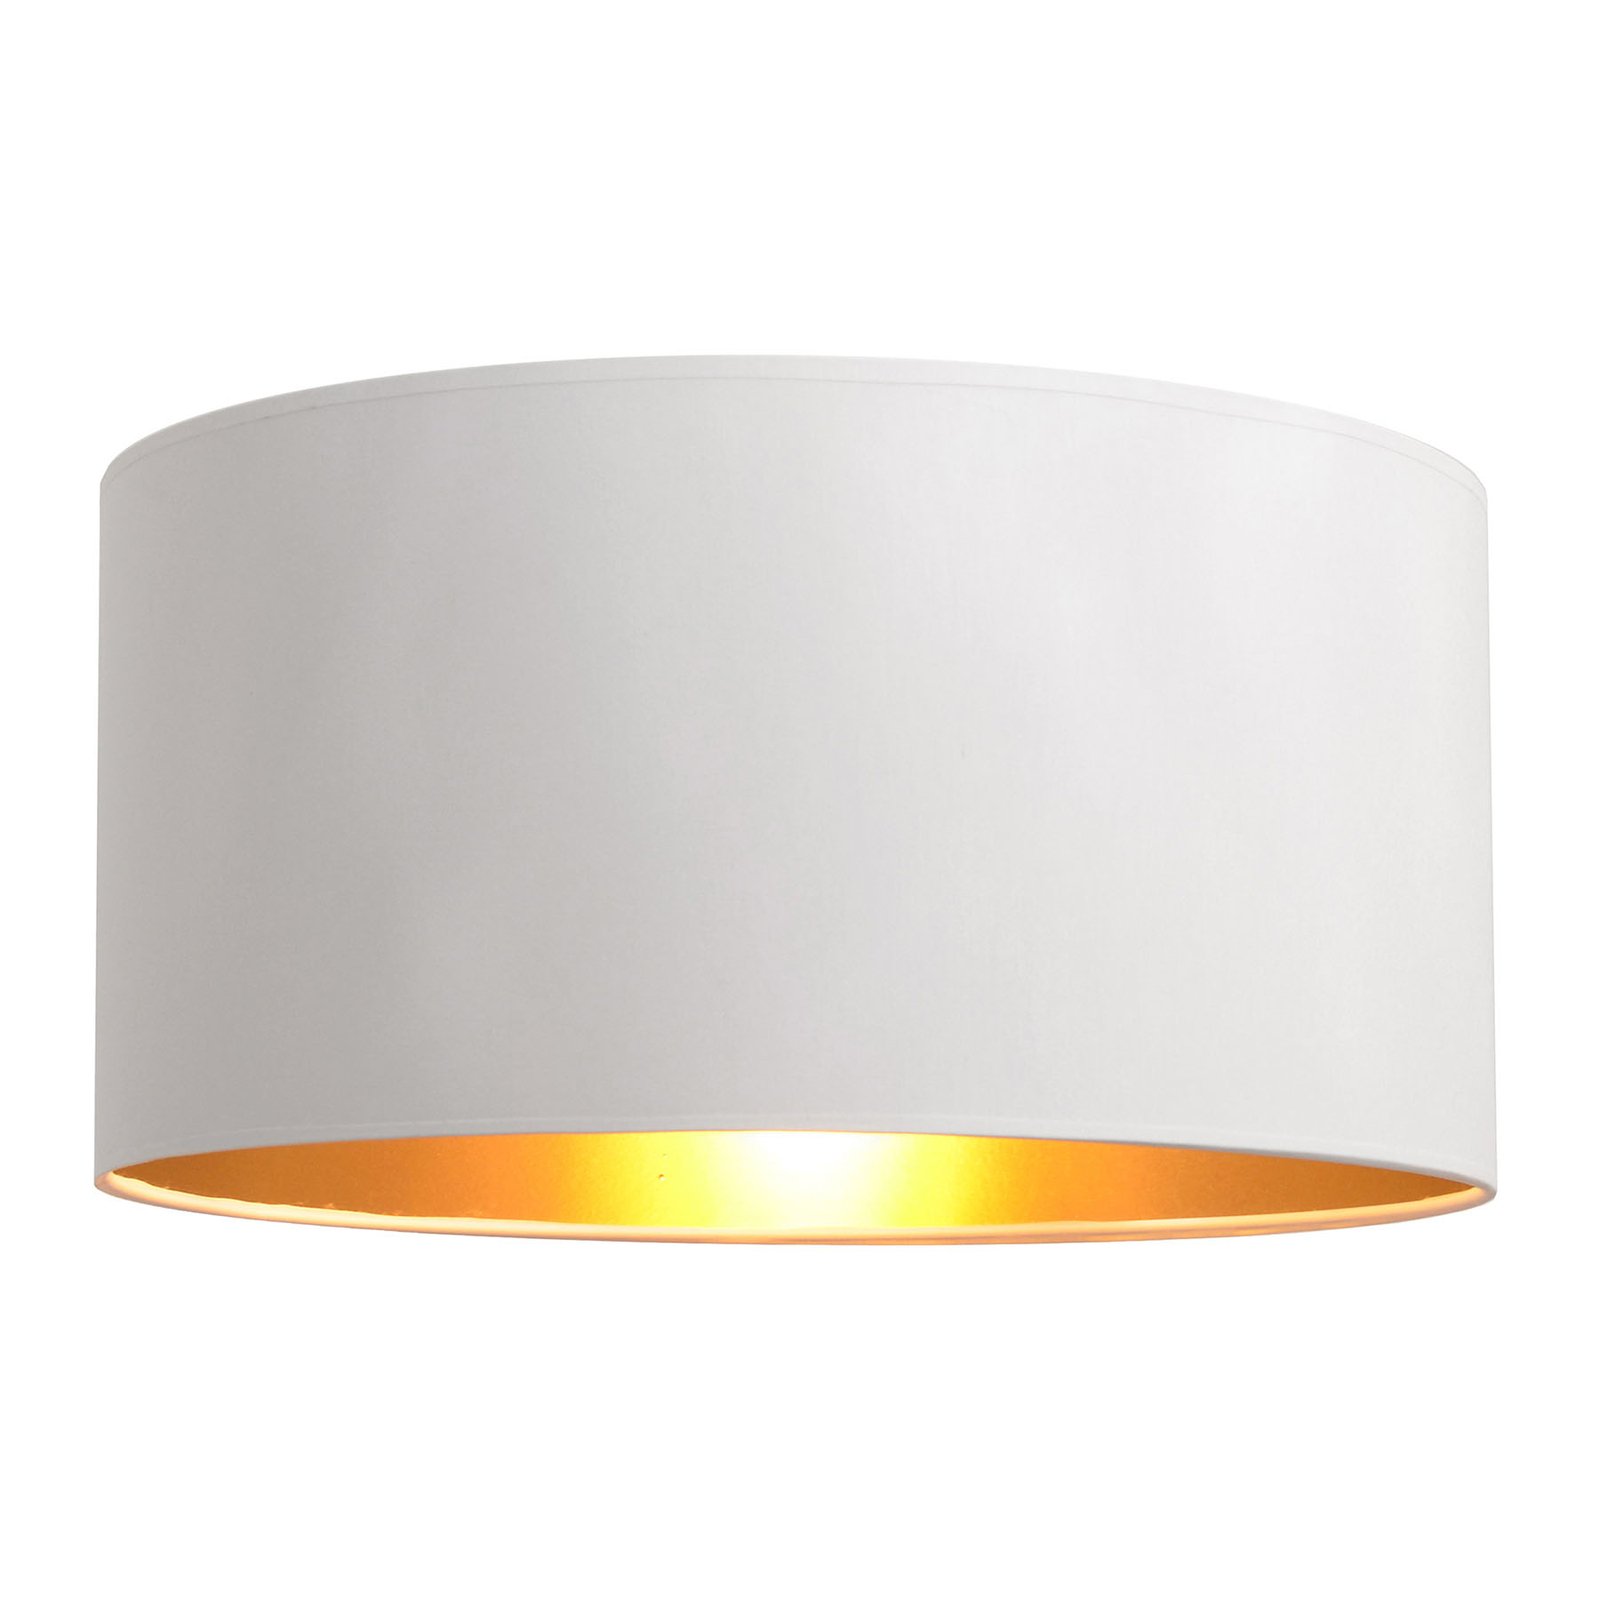 Alba lampshade, Ø 40 cm, E27, white/silver